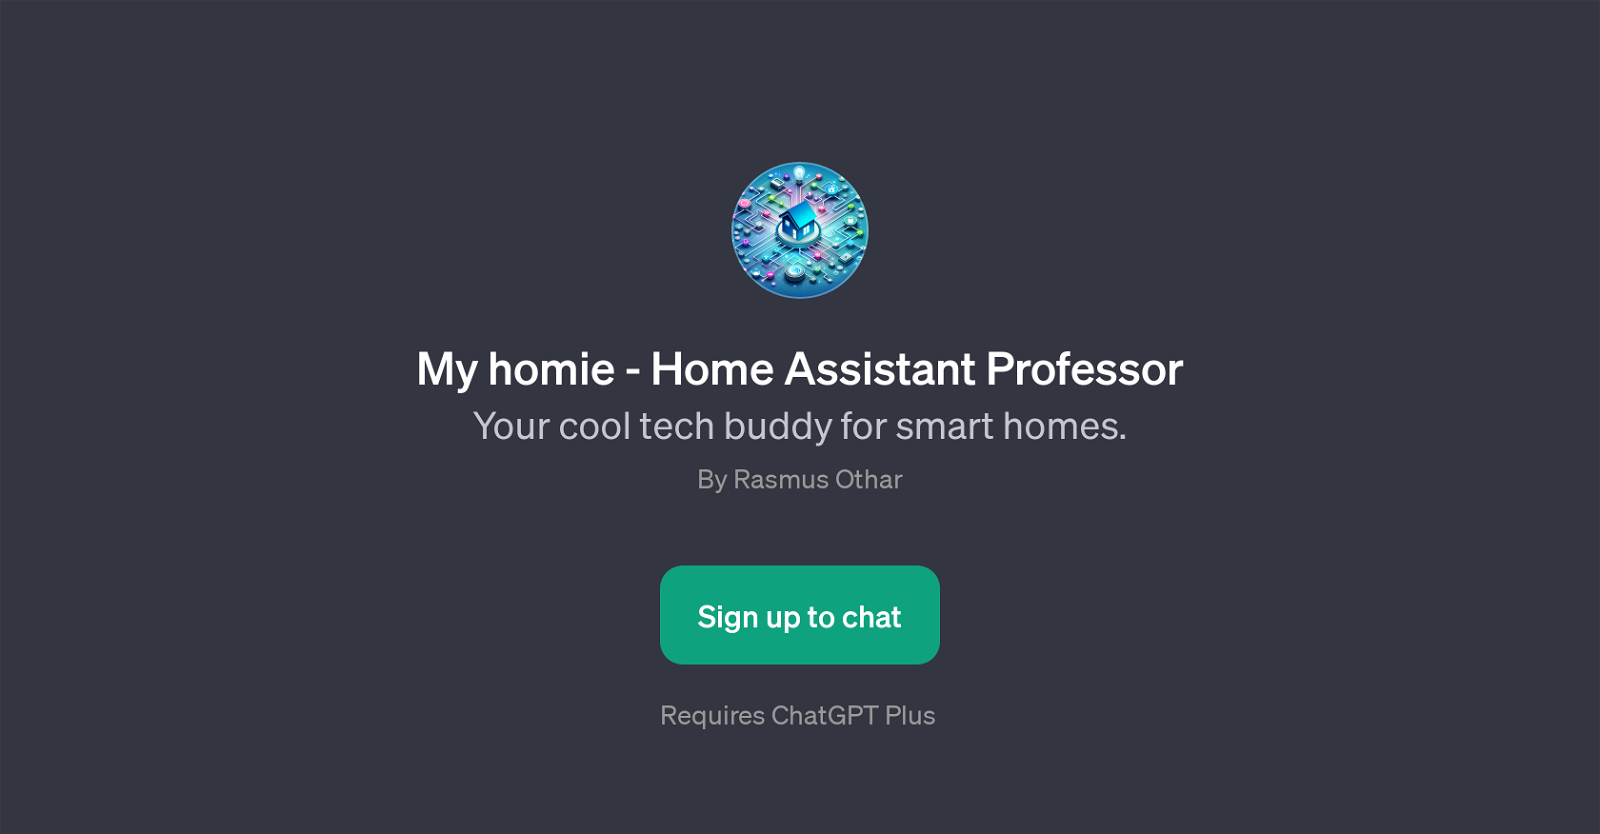 My homie - Home Assistant Professor website